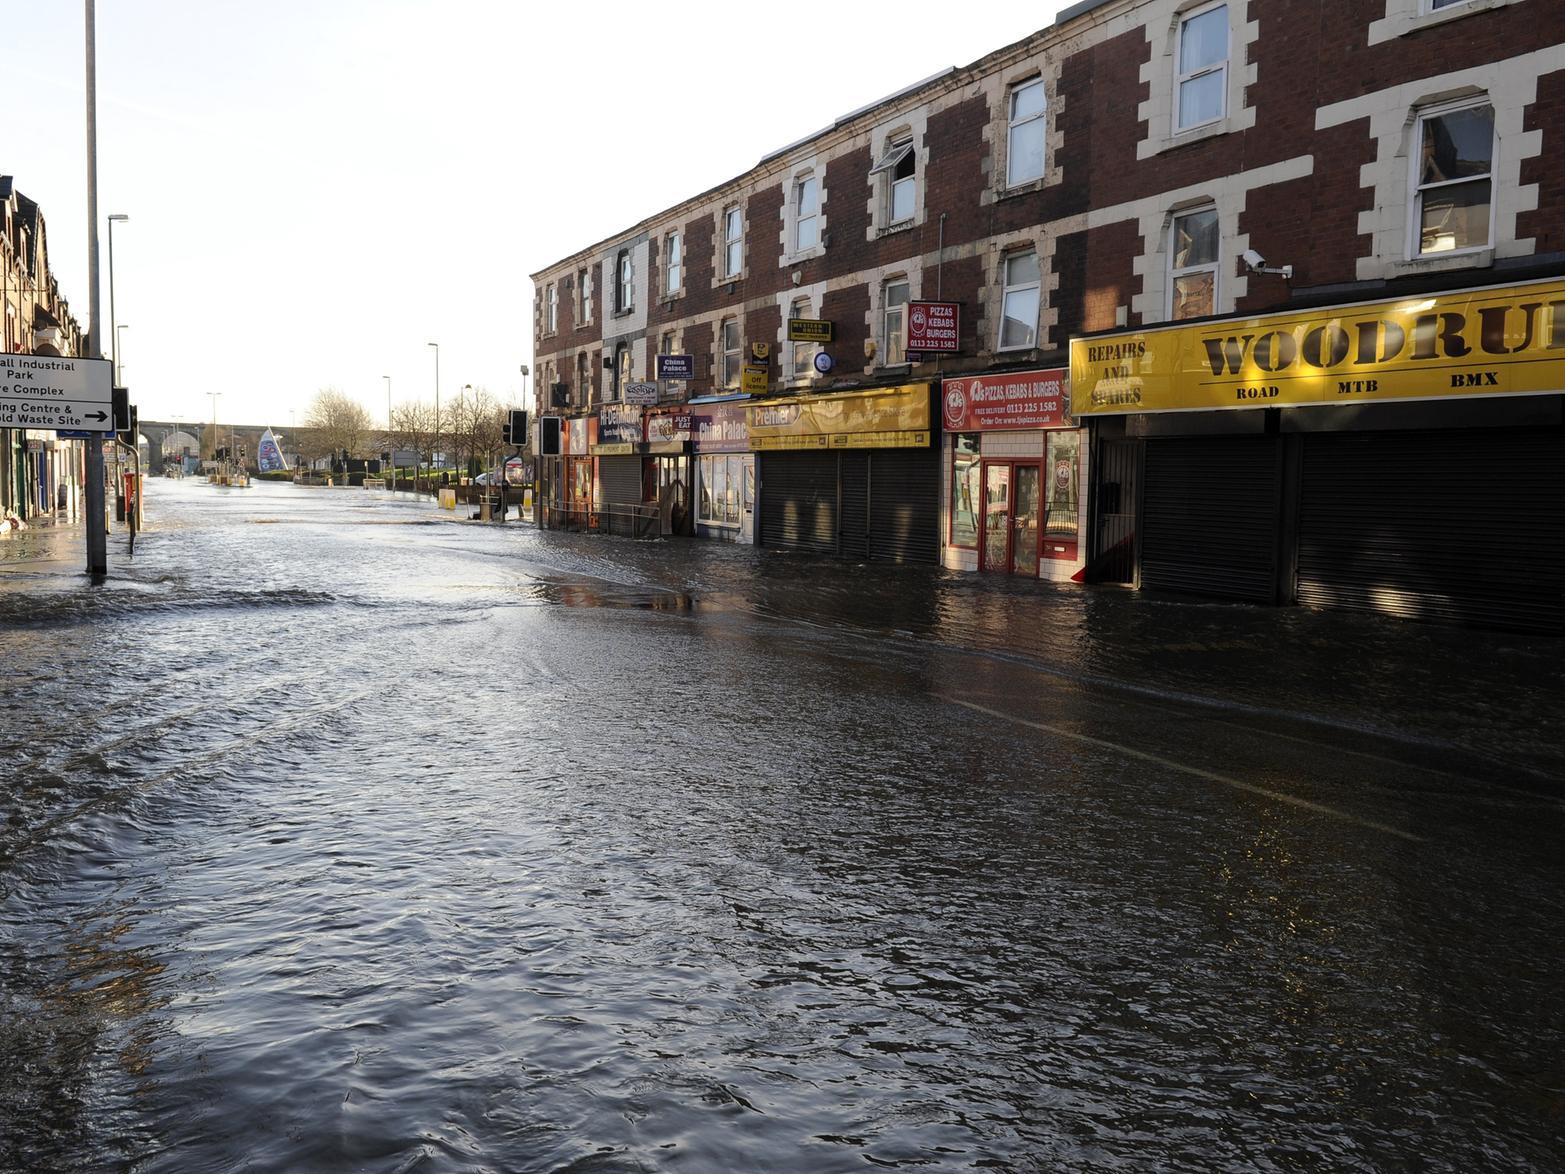 Kirkstall Road after the December floods